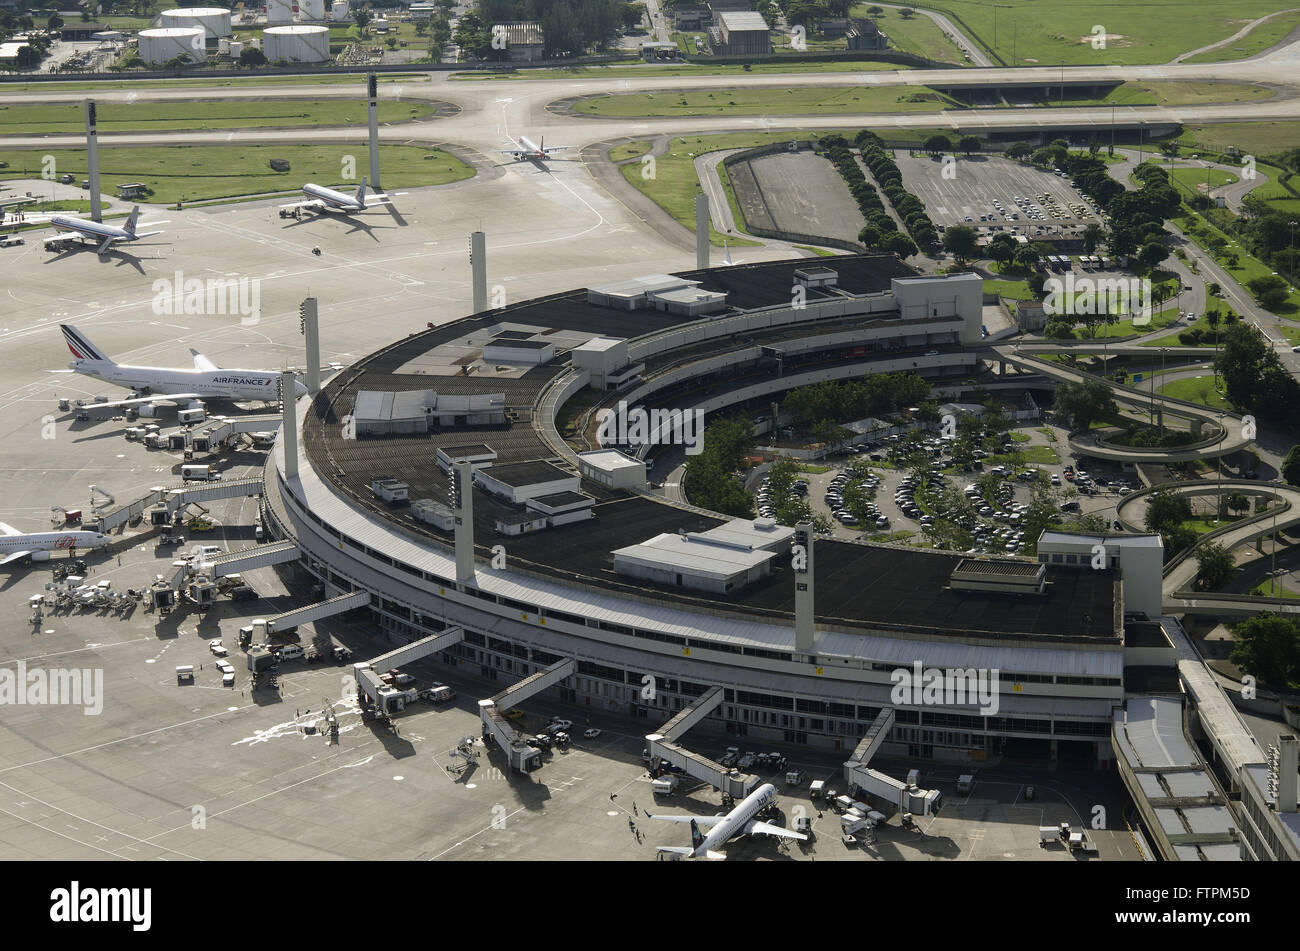 Galeao - - the Rio de Janeiro International Airport Antonio Carlos Jobim on Governor`s Island Stock Photo